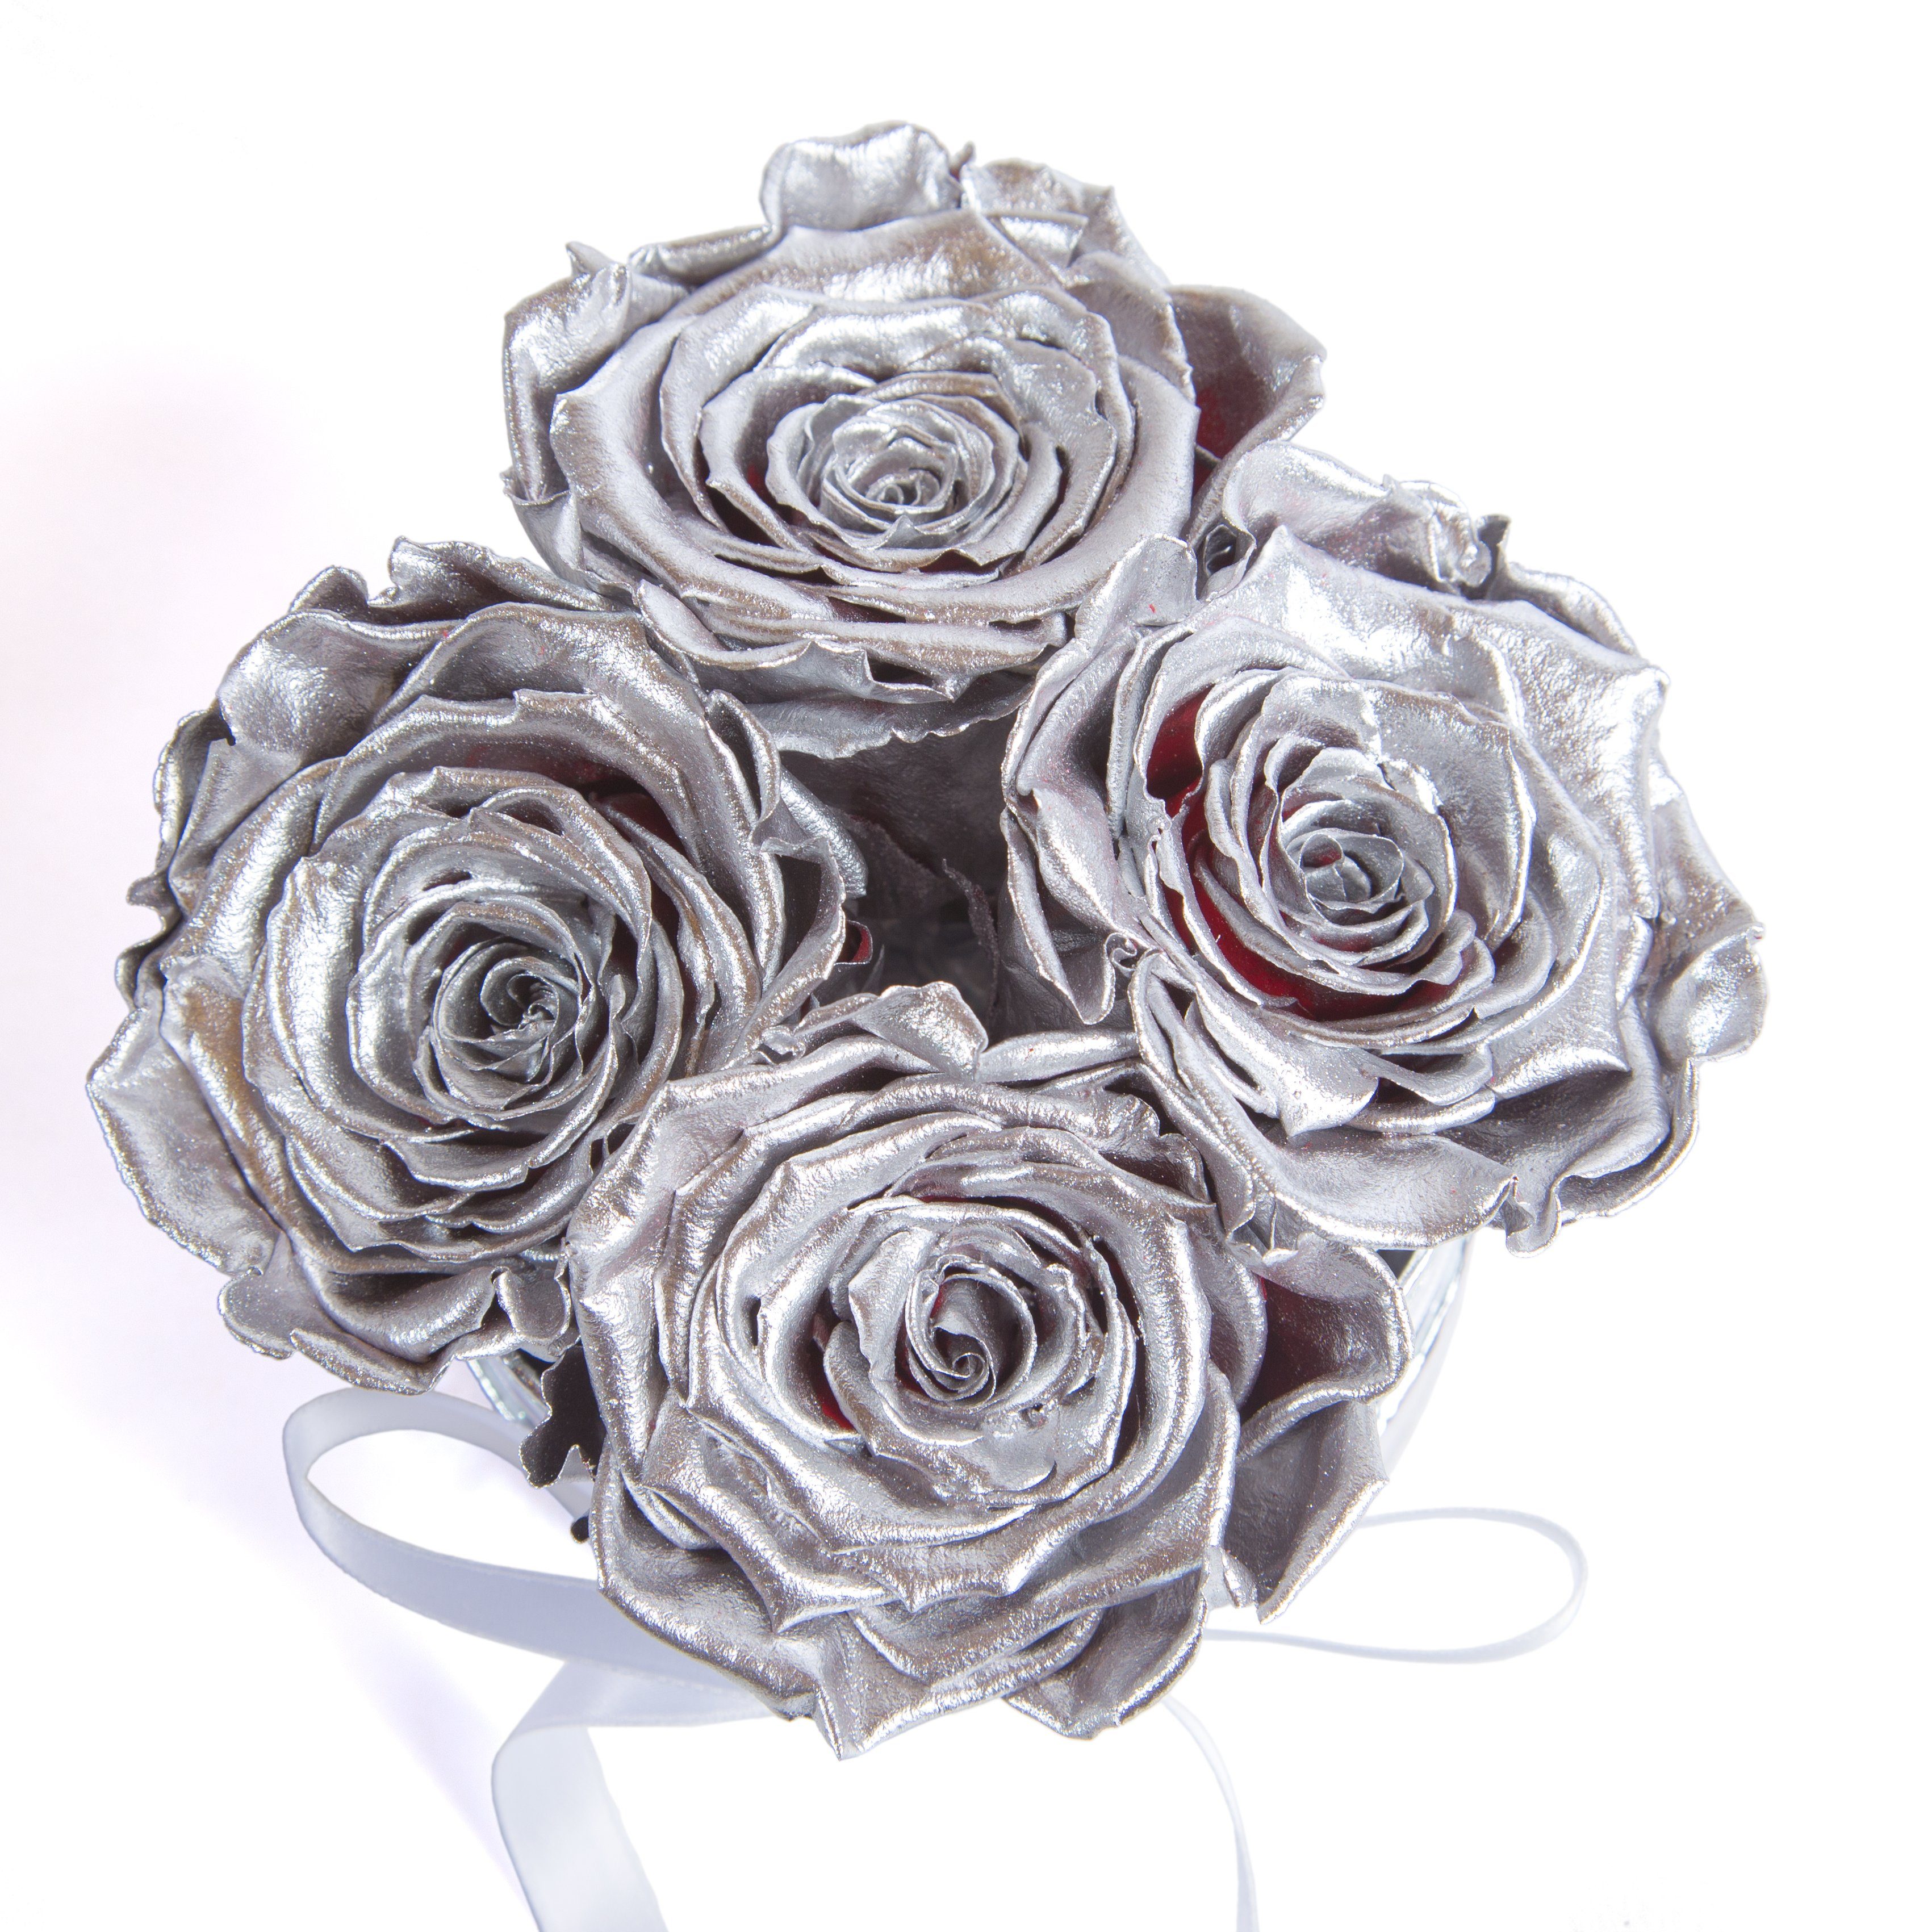 Kunstblume Infinity Rosenbox weiß Silber haltbar Rosen echte SCHULZ 3 Geschenkbox Jahre Heidelberg, 10 rund Höhe inklusiv Rosen ROSEMARIE 4 cm, konservierte Rose